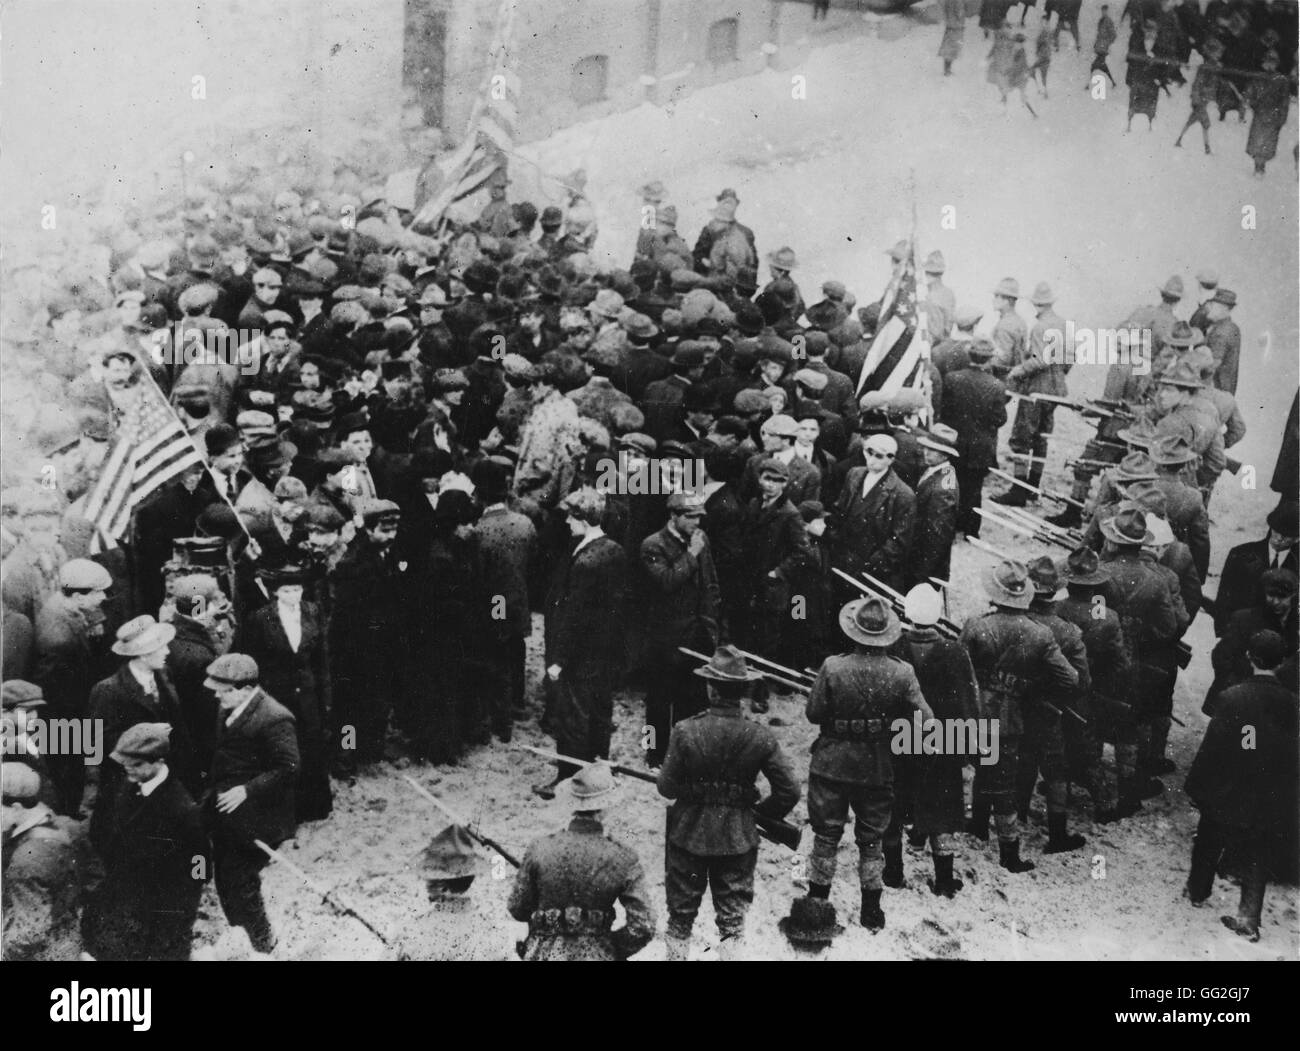 Les grèves dans le domaine du textile à Lawrence, Massachusetts. Photographie prise en 1912 Banque D'Images